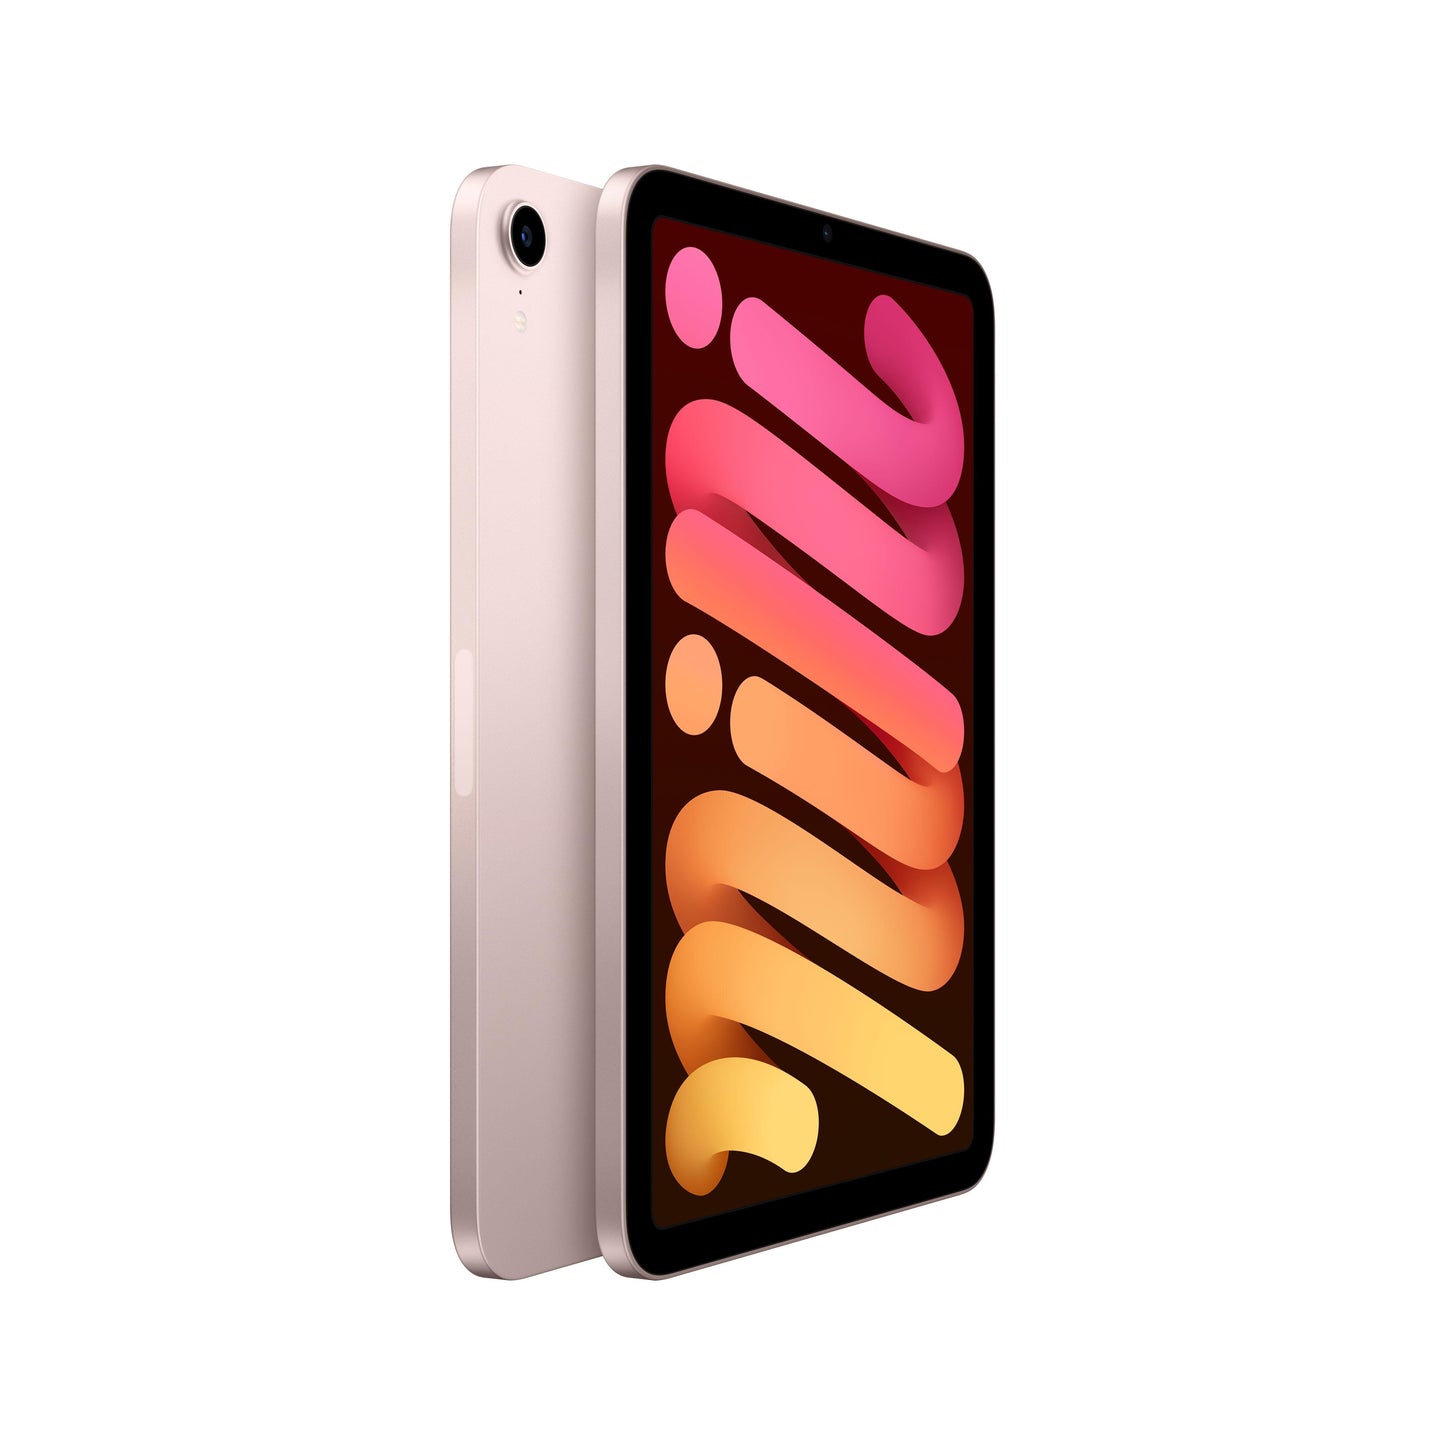 2021 iPad mini Wi-Fi + Cellular 256GB - Pink (6th generation)